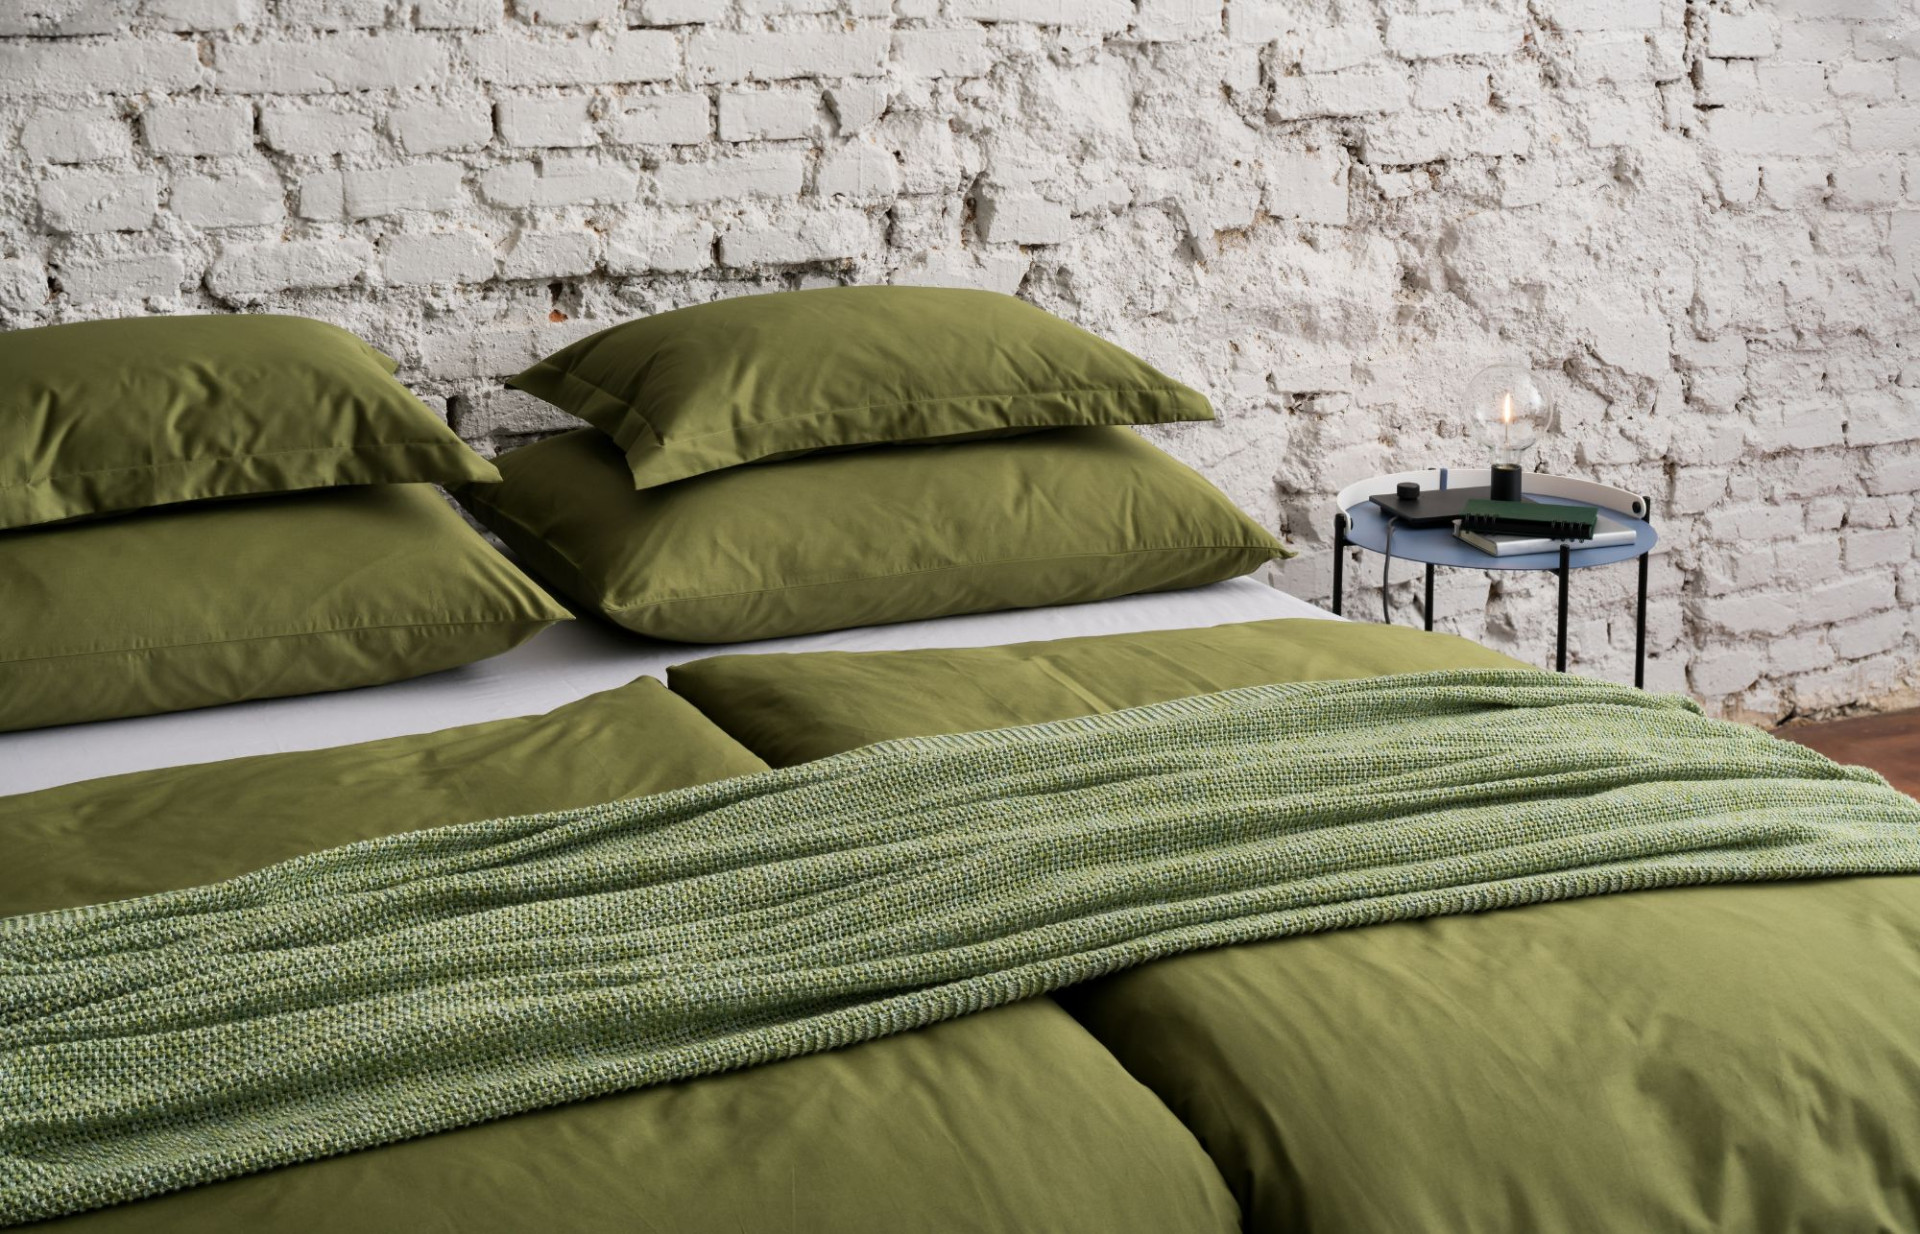 Mum's Kingdom bed linen & woven Colour Melange blanket.